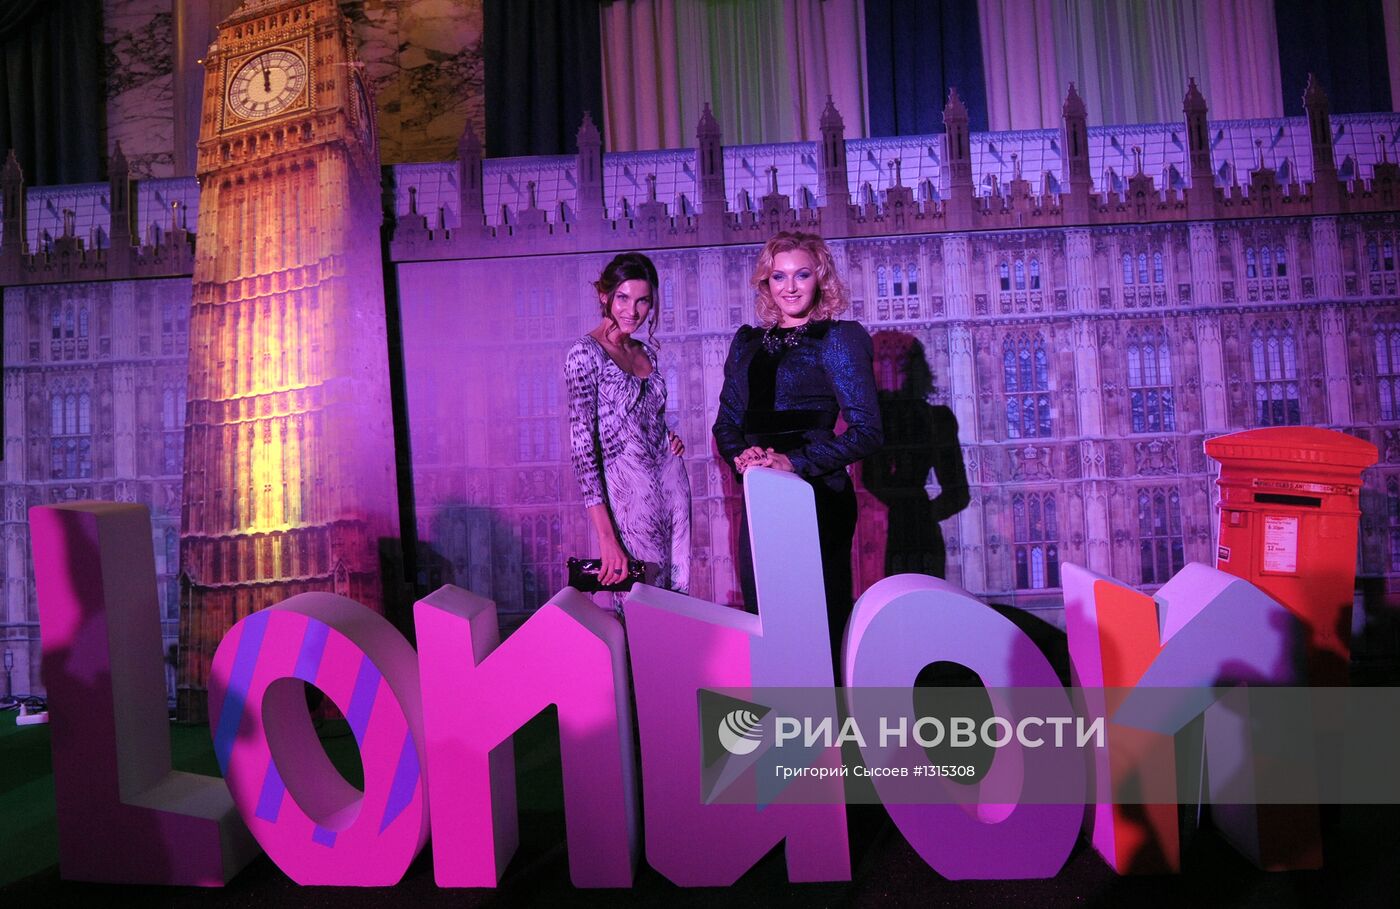 Ежегодный "Бал олимпийцев России – 2012" в Москве